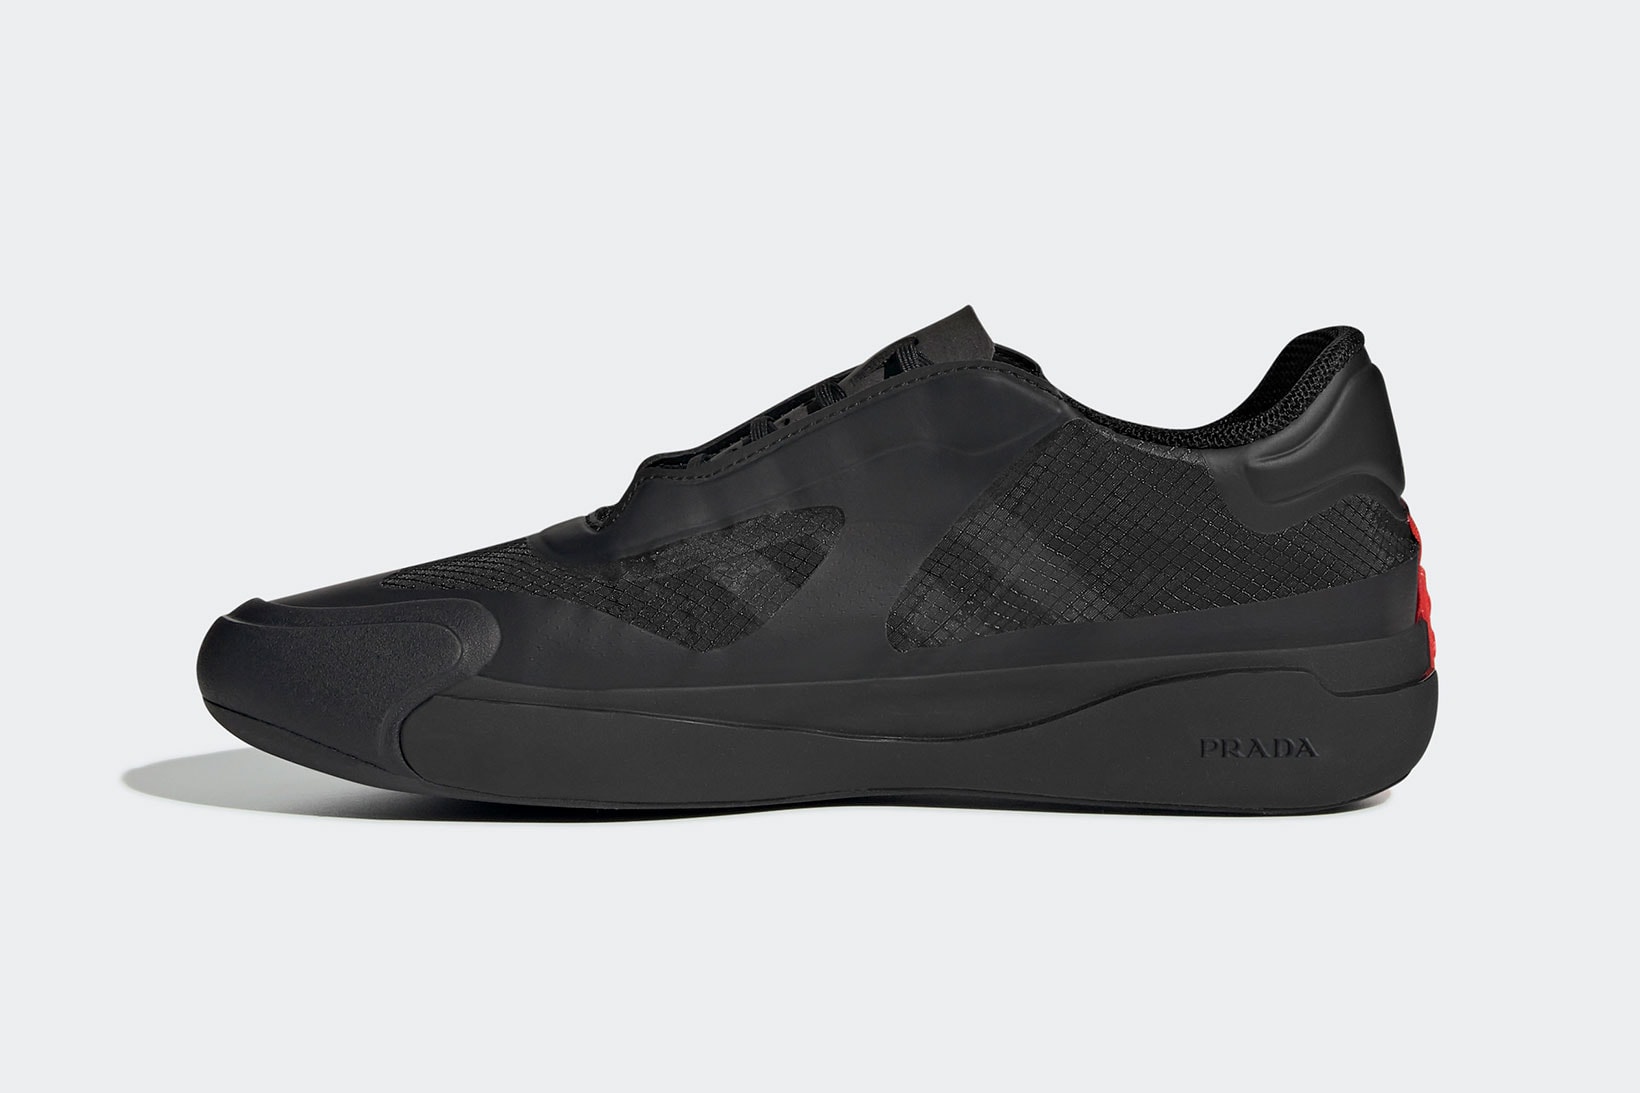 Prada adidas A+P LUNA ROSSA 21 Collaboration Core Black Details